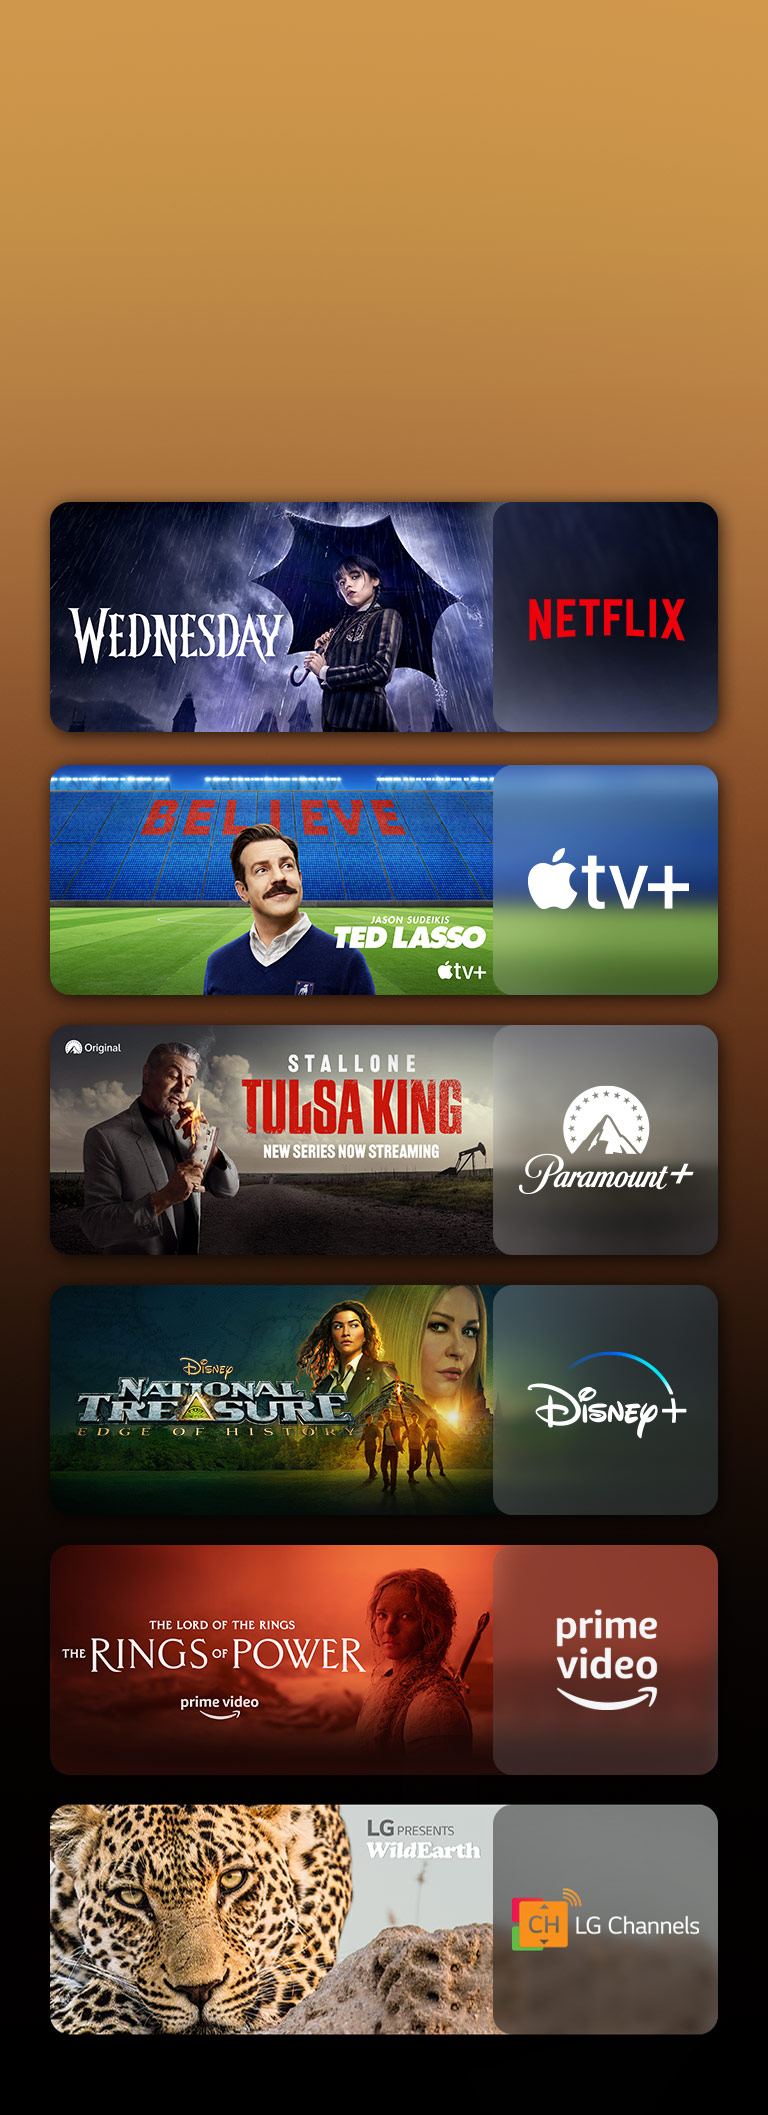 Há logotipos das plataformas de streaming com cenas correspondentes ao lado de cada um. Há imagens de: Wednesday da Netflix; TED LASSO da Apple TV; Tulsa King da Paramount+, Os Anéis de Poder do PRIME VIDEO; TOP GUN da sky showtime; e o leopardo do LG CHANNELS.